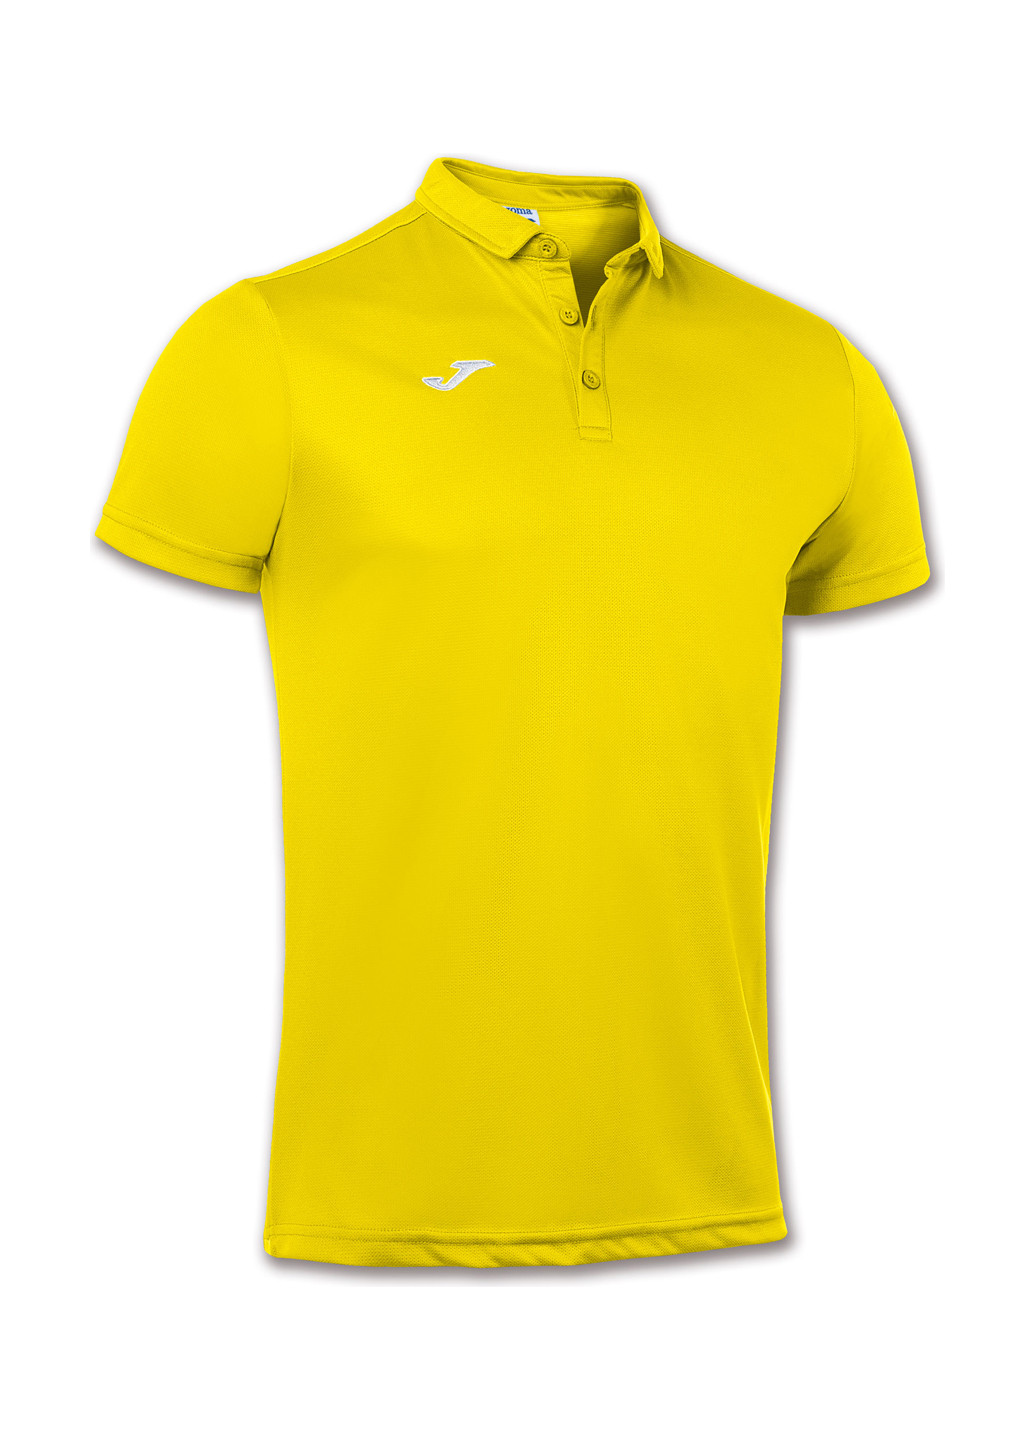 Желтая футболка-поло для мужчин Joma однотонная